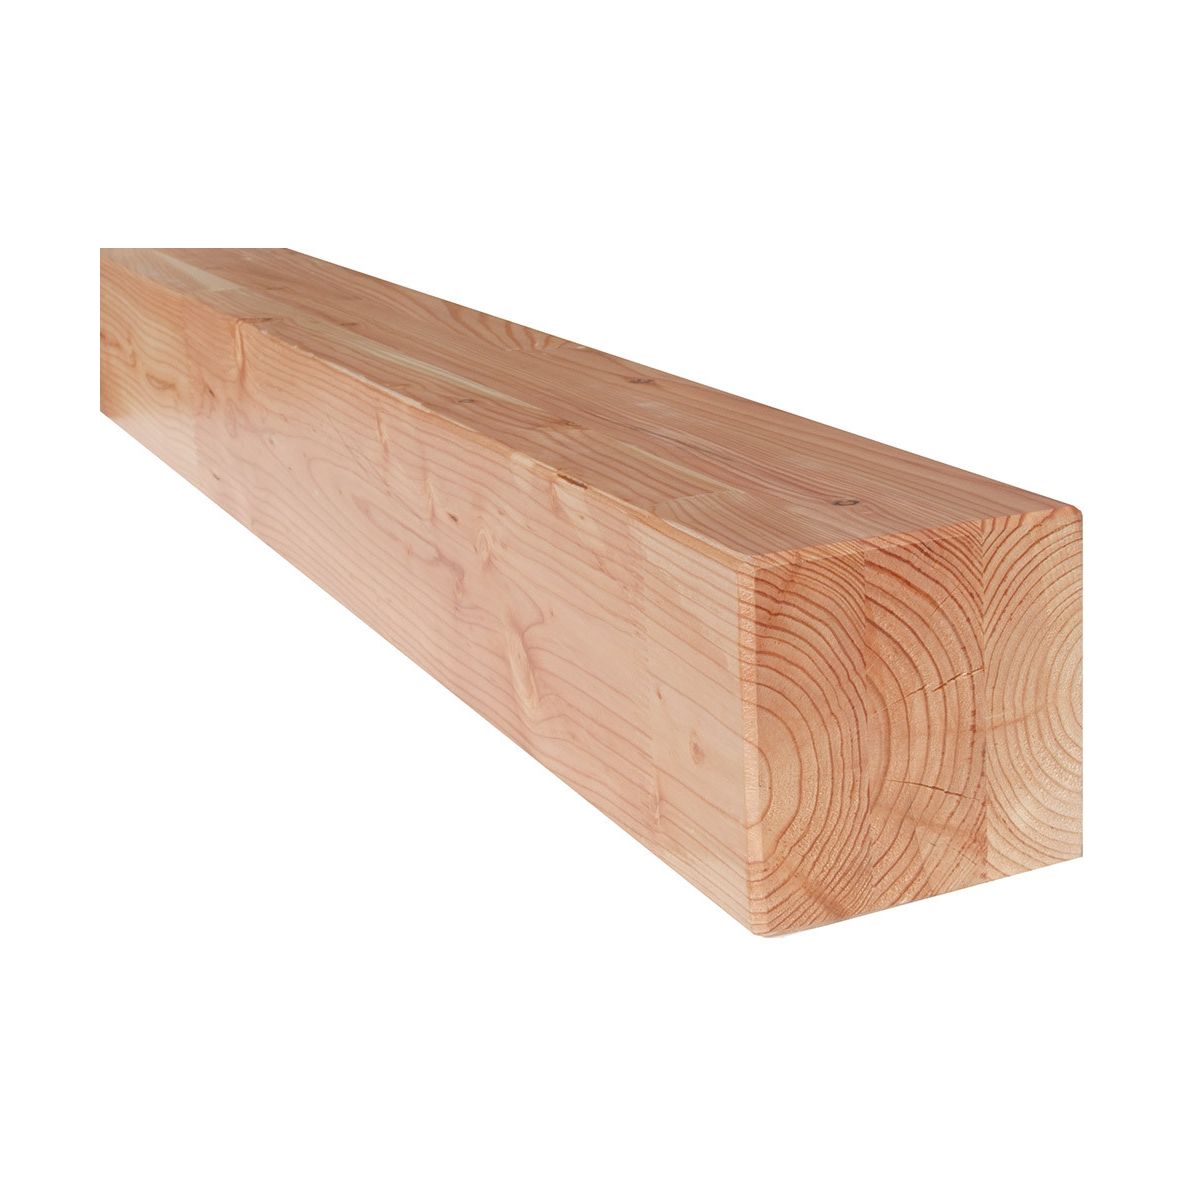 Poutre en bois épicéa - Section 20x20 - Longueur 3m